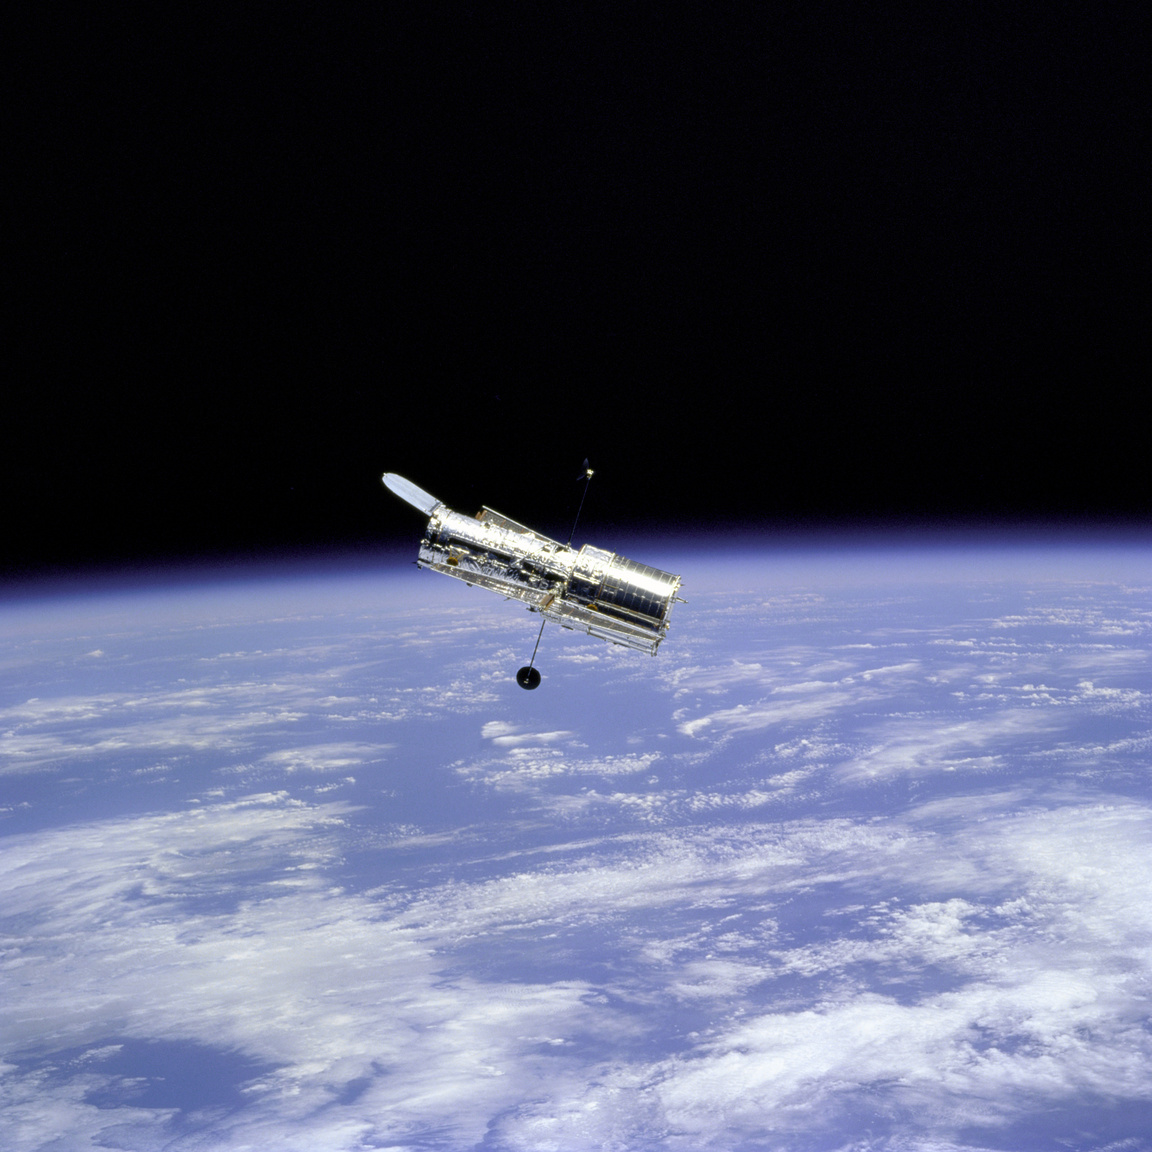 1997. február 19. A második nagyjavítás utáni fotó a Hubble űrtávcsőről, a felvétel a Discovery űrsikló fedélzetéről készült. Jól látható, hogy a távcső optikáját védő fedél nyitva van.